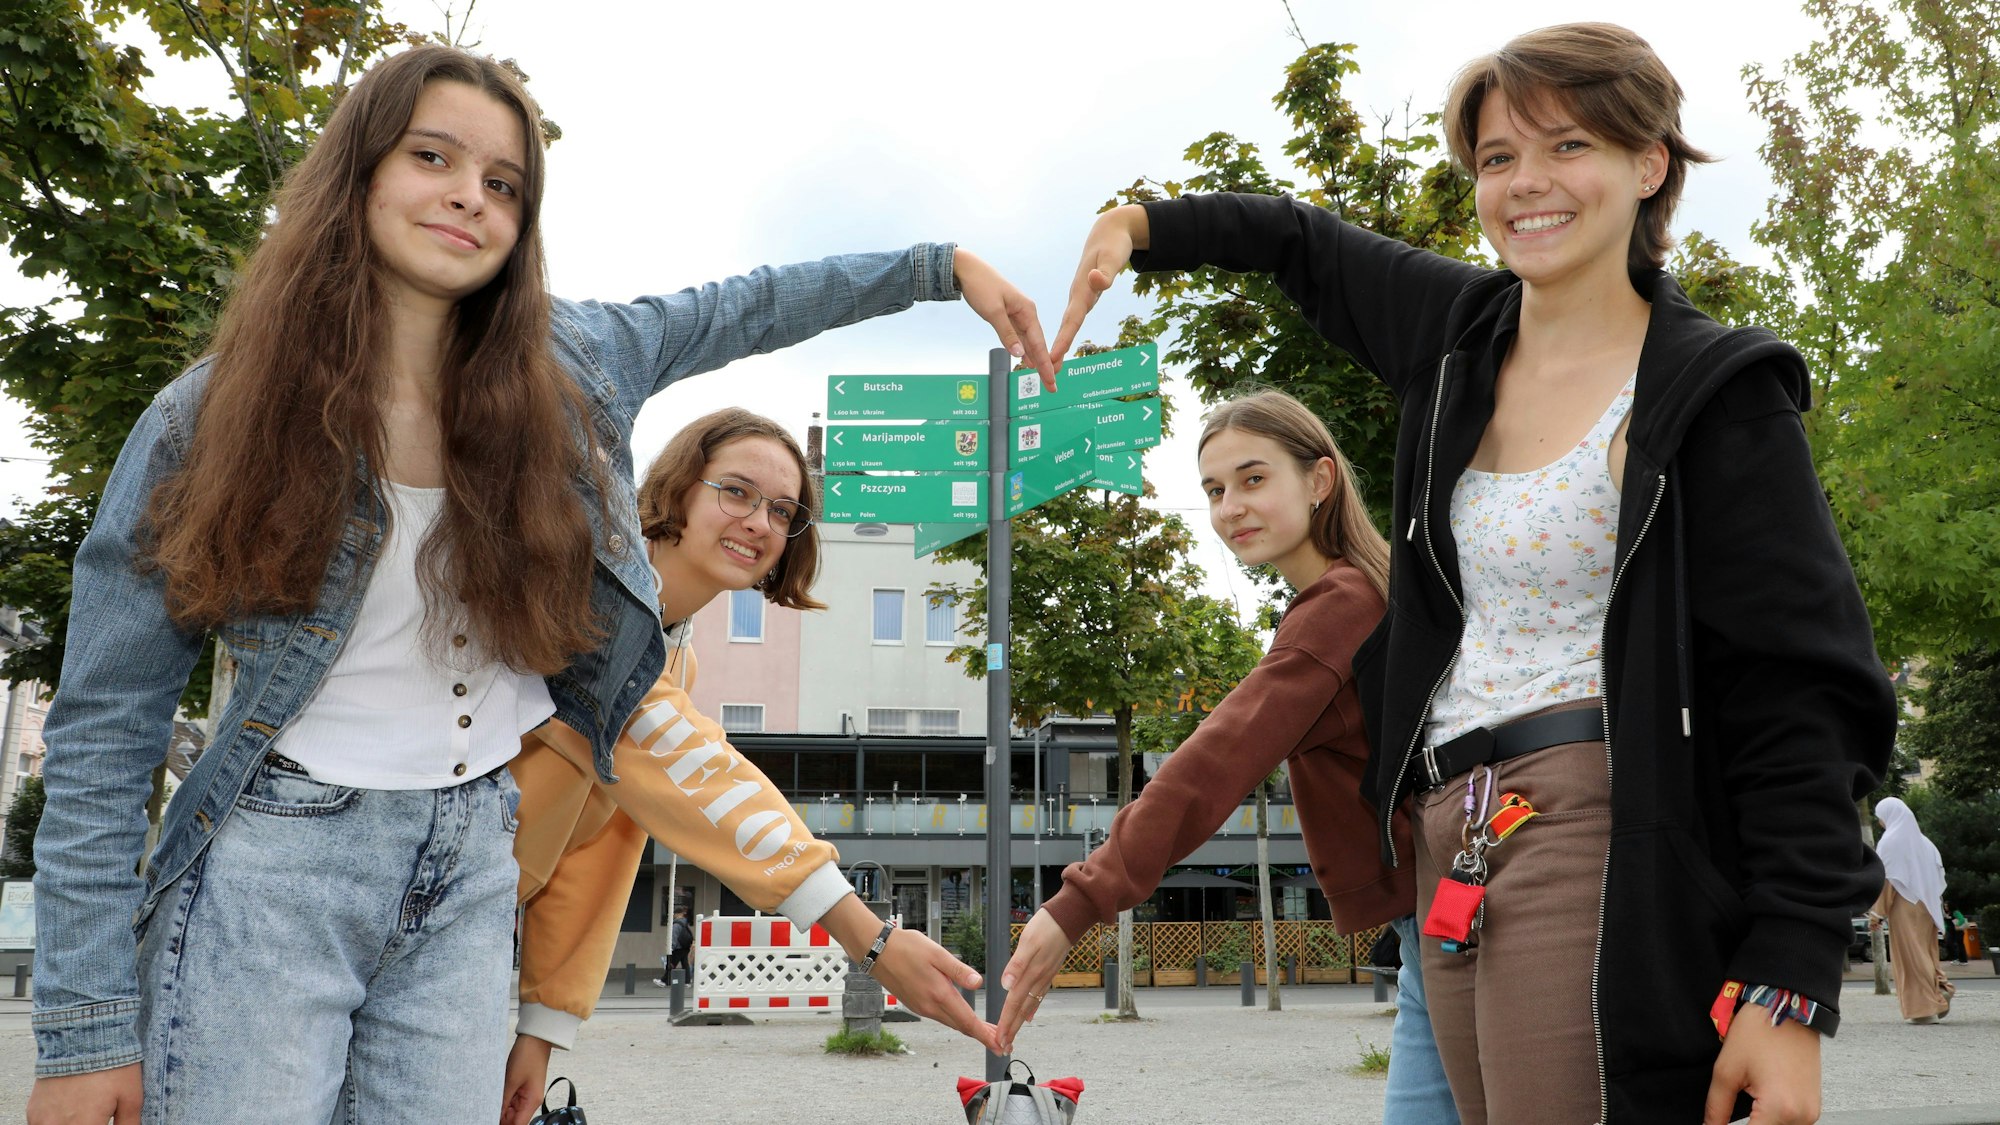 Vier Mädchen mit ihren Händen ein Herz vor dem Schildermast, an dem auch ein Wegweiser Richtung Butscha zeigt.